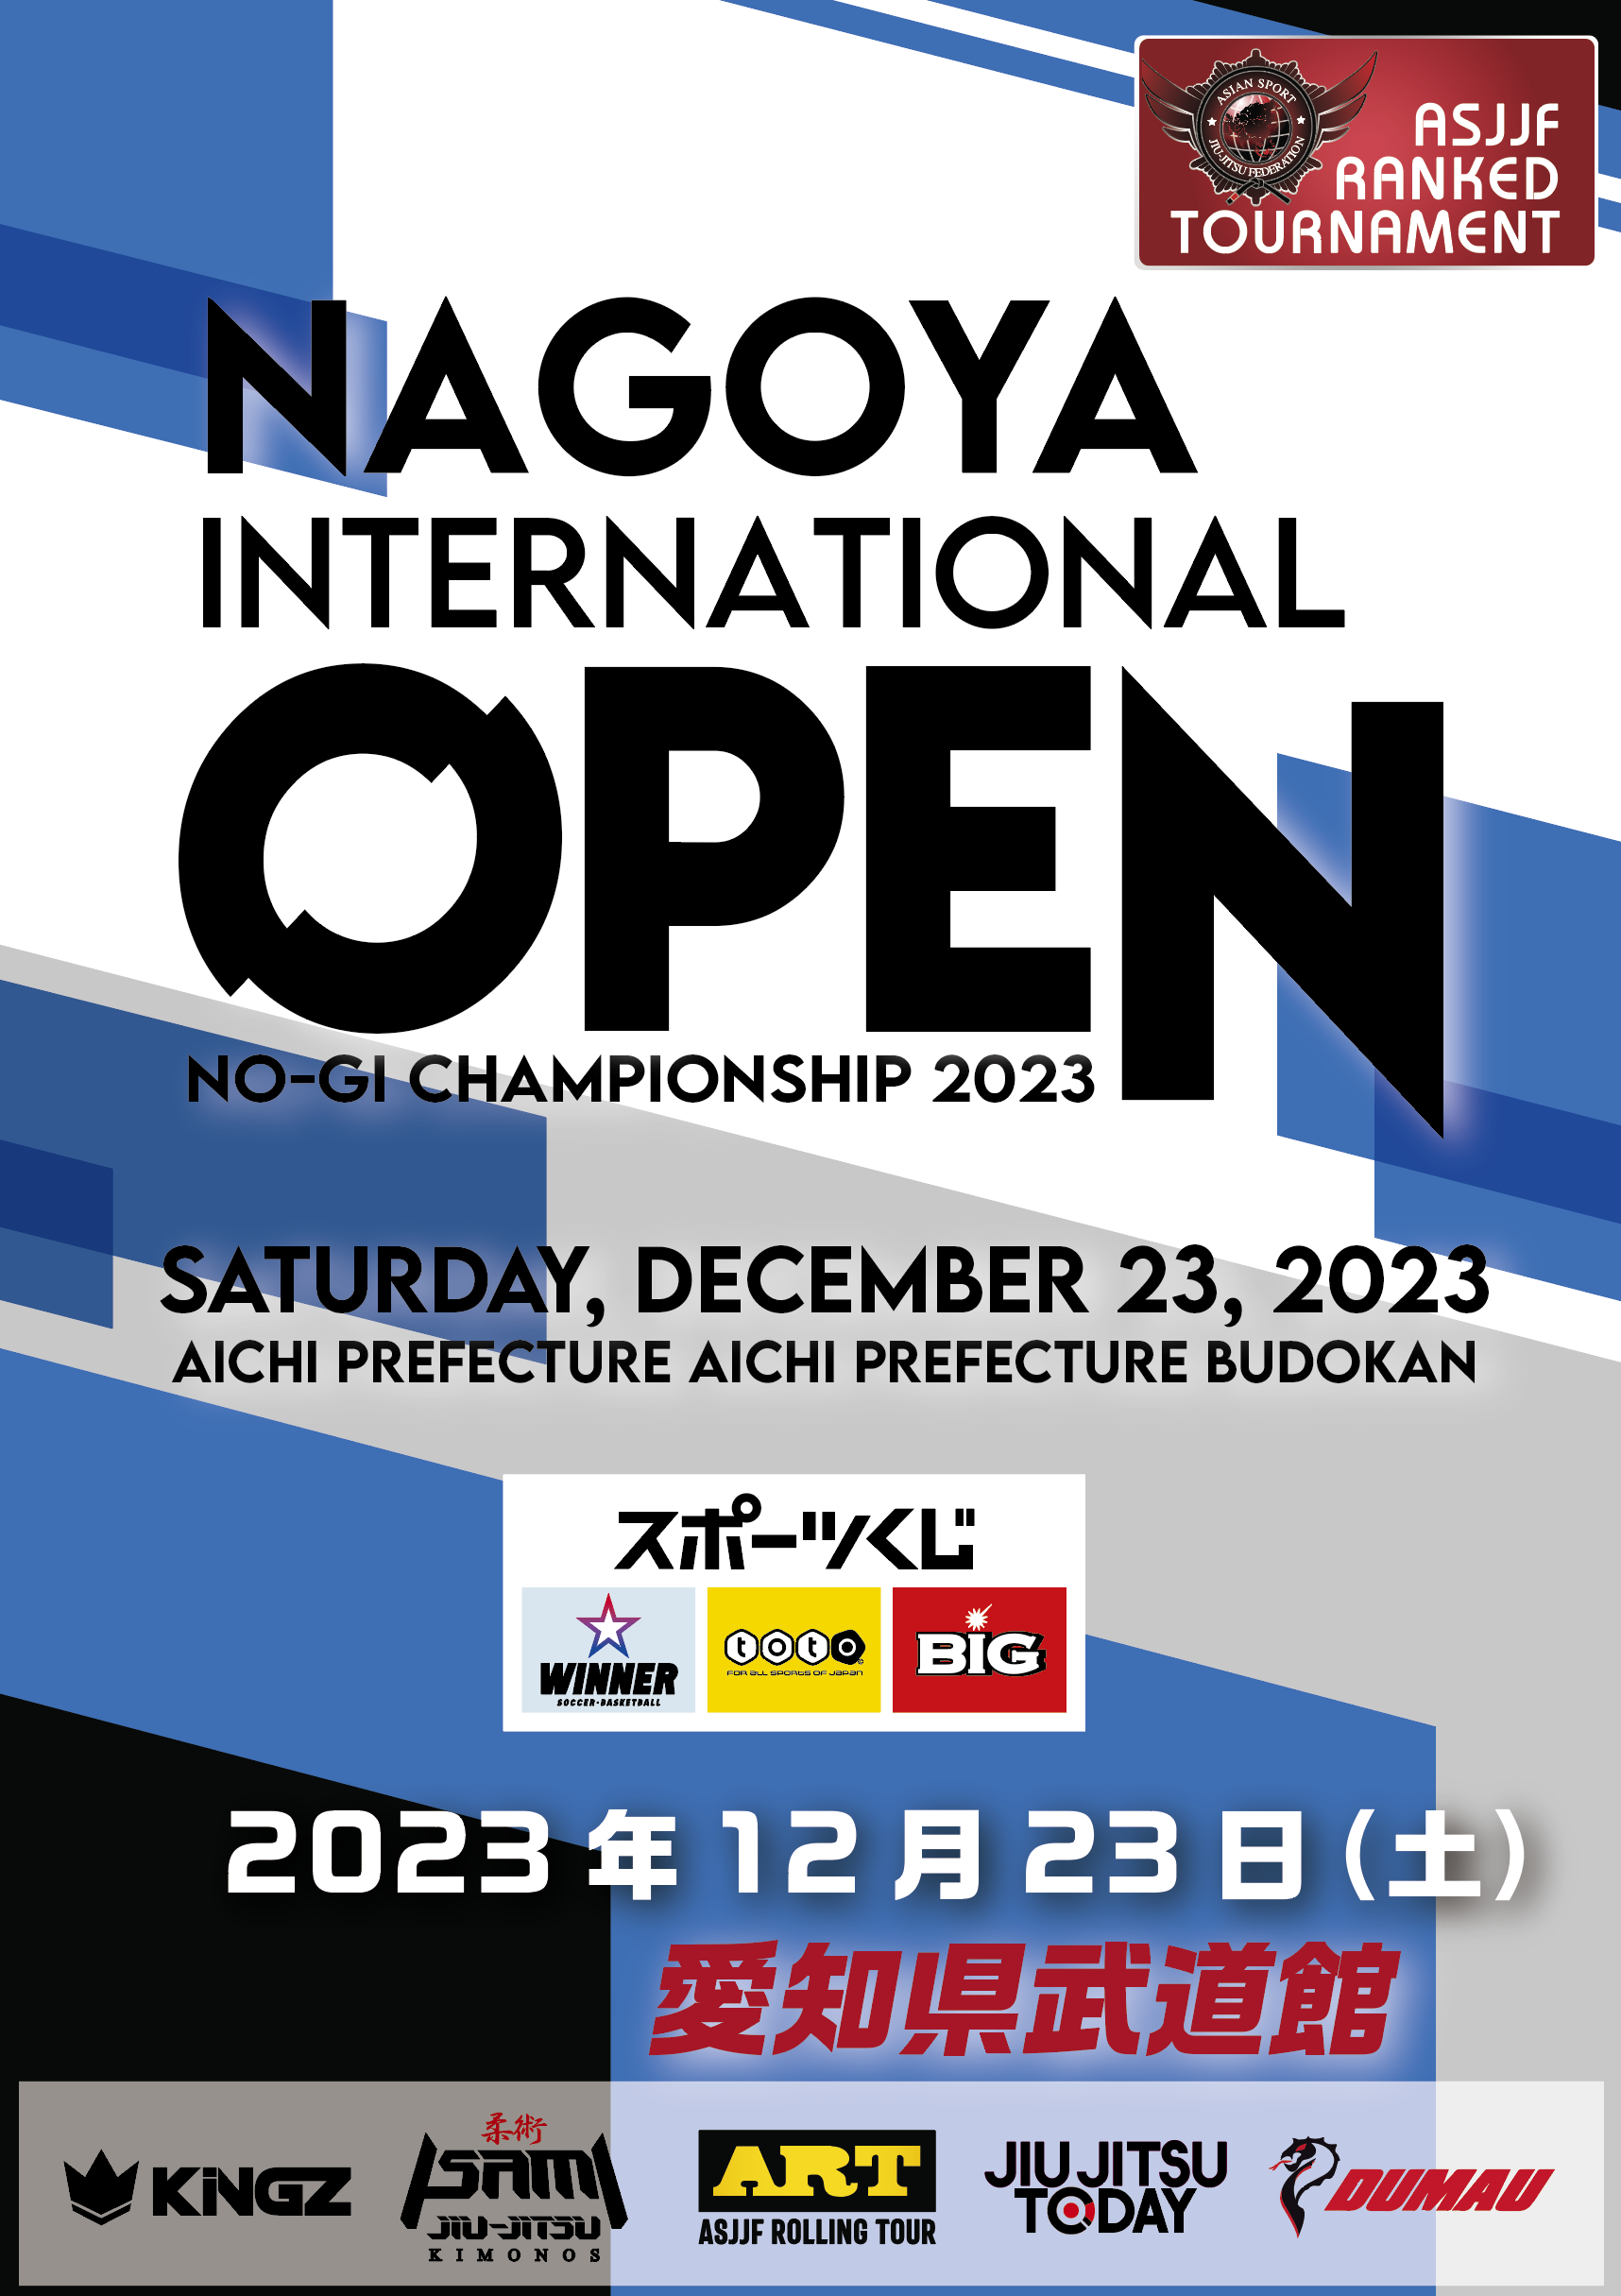 nagoya international open no-gi championship 2023